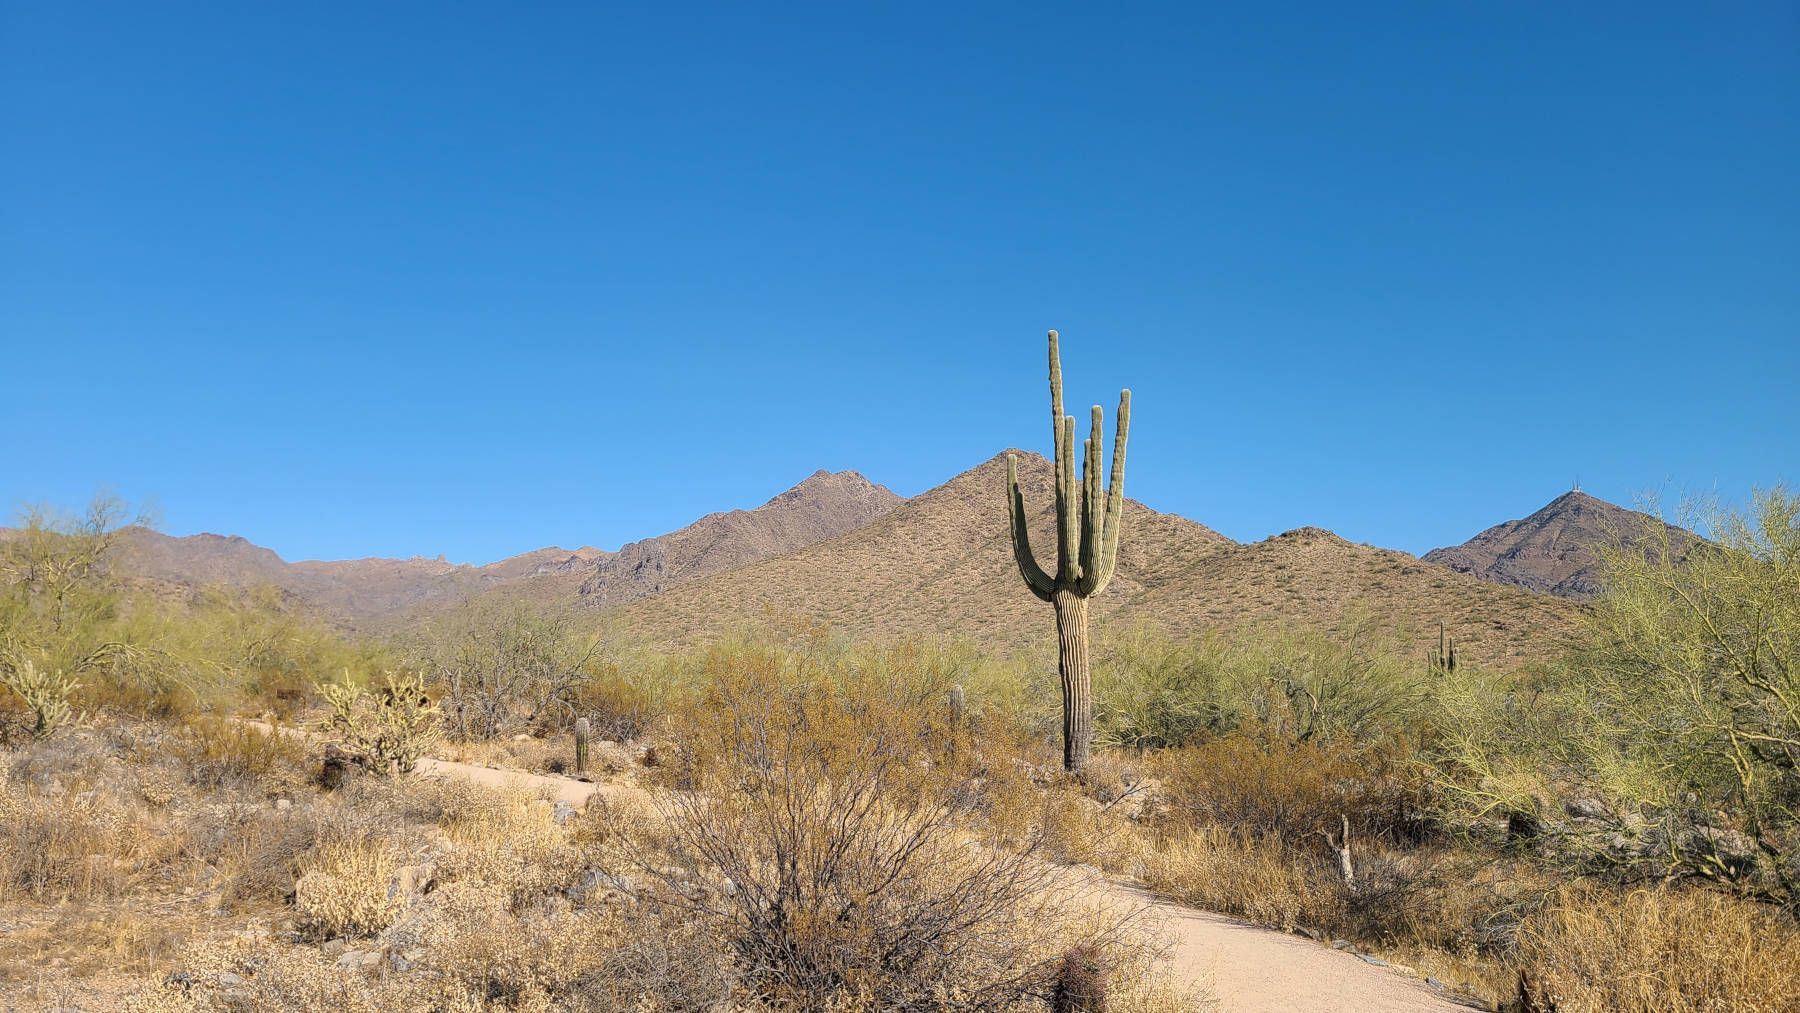 Hiking near Phoenix, AZ with no shade